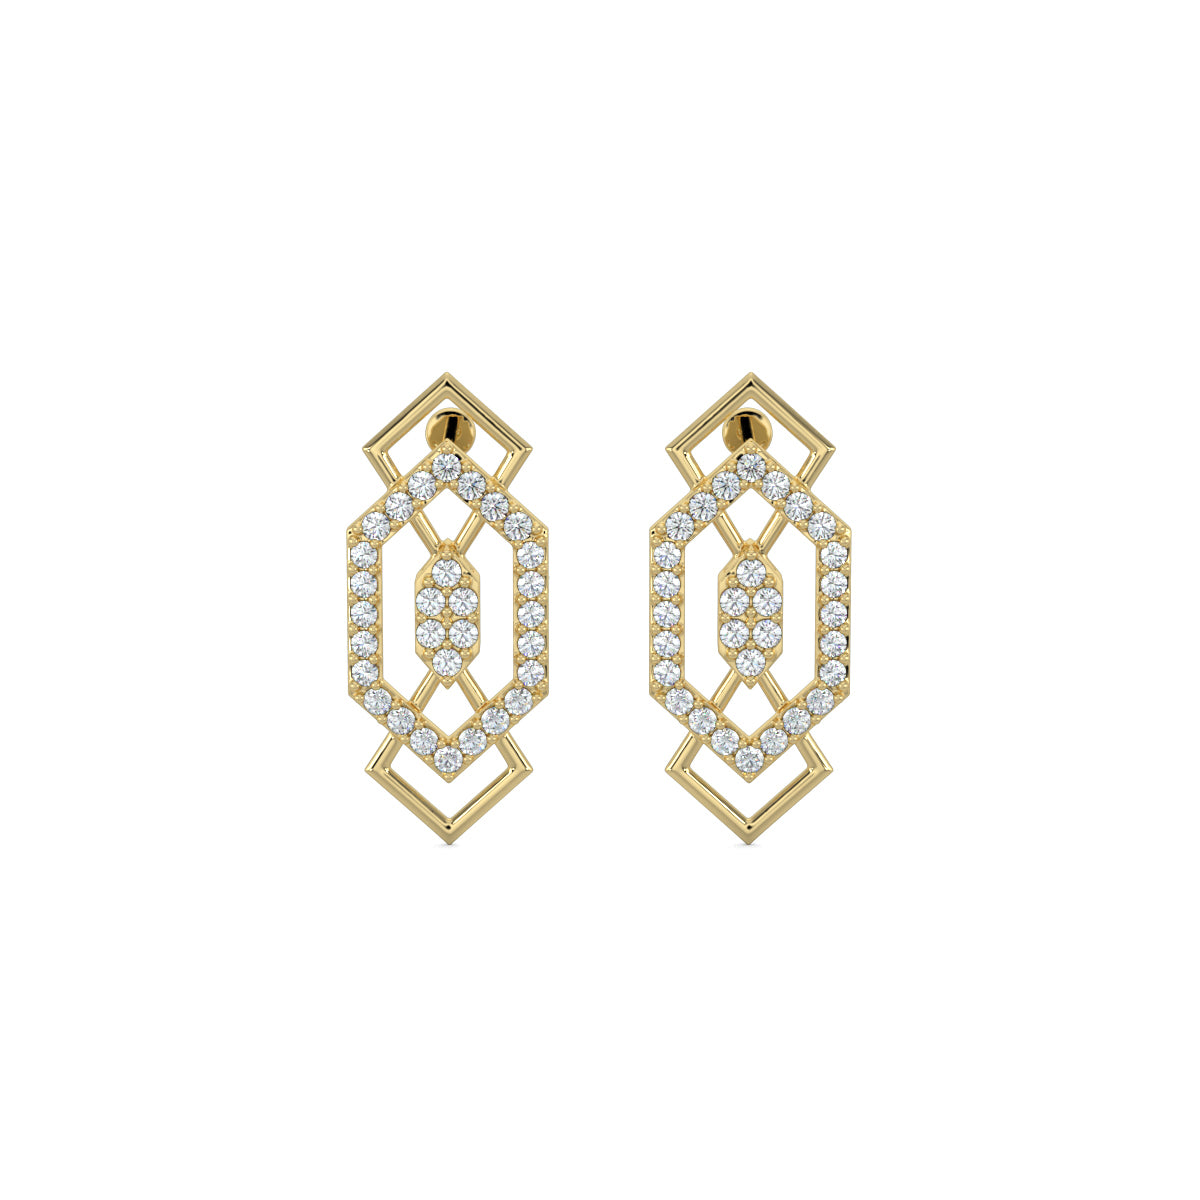 Yellow Gold, Diamond earrings, mid-length earrings, elegant drop earrings, sparkling diamond jewelry